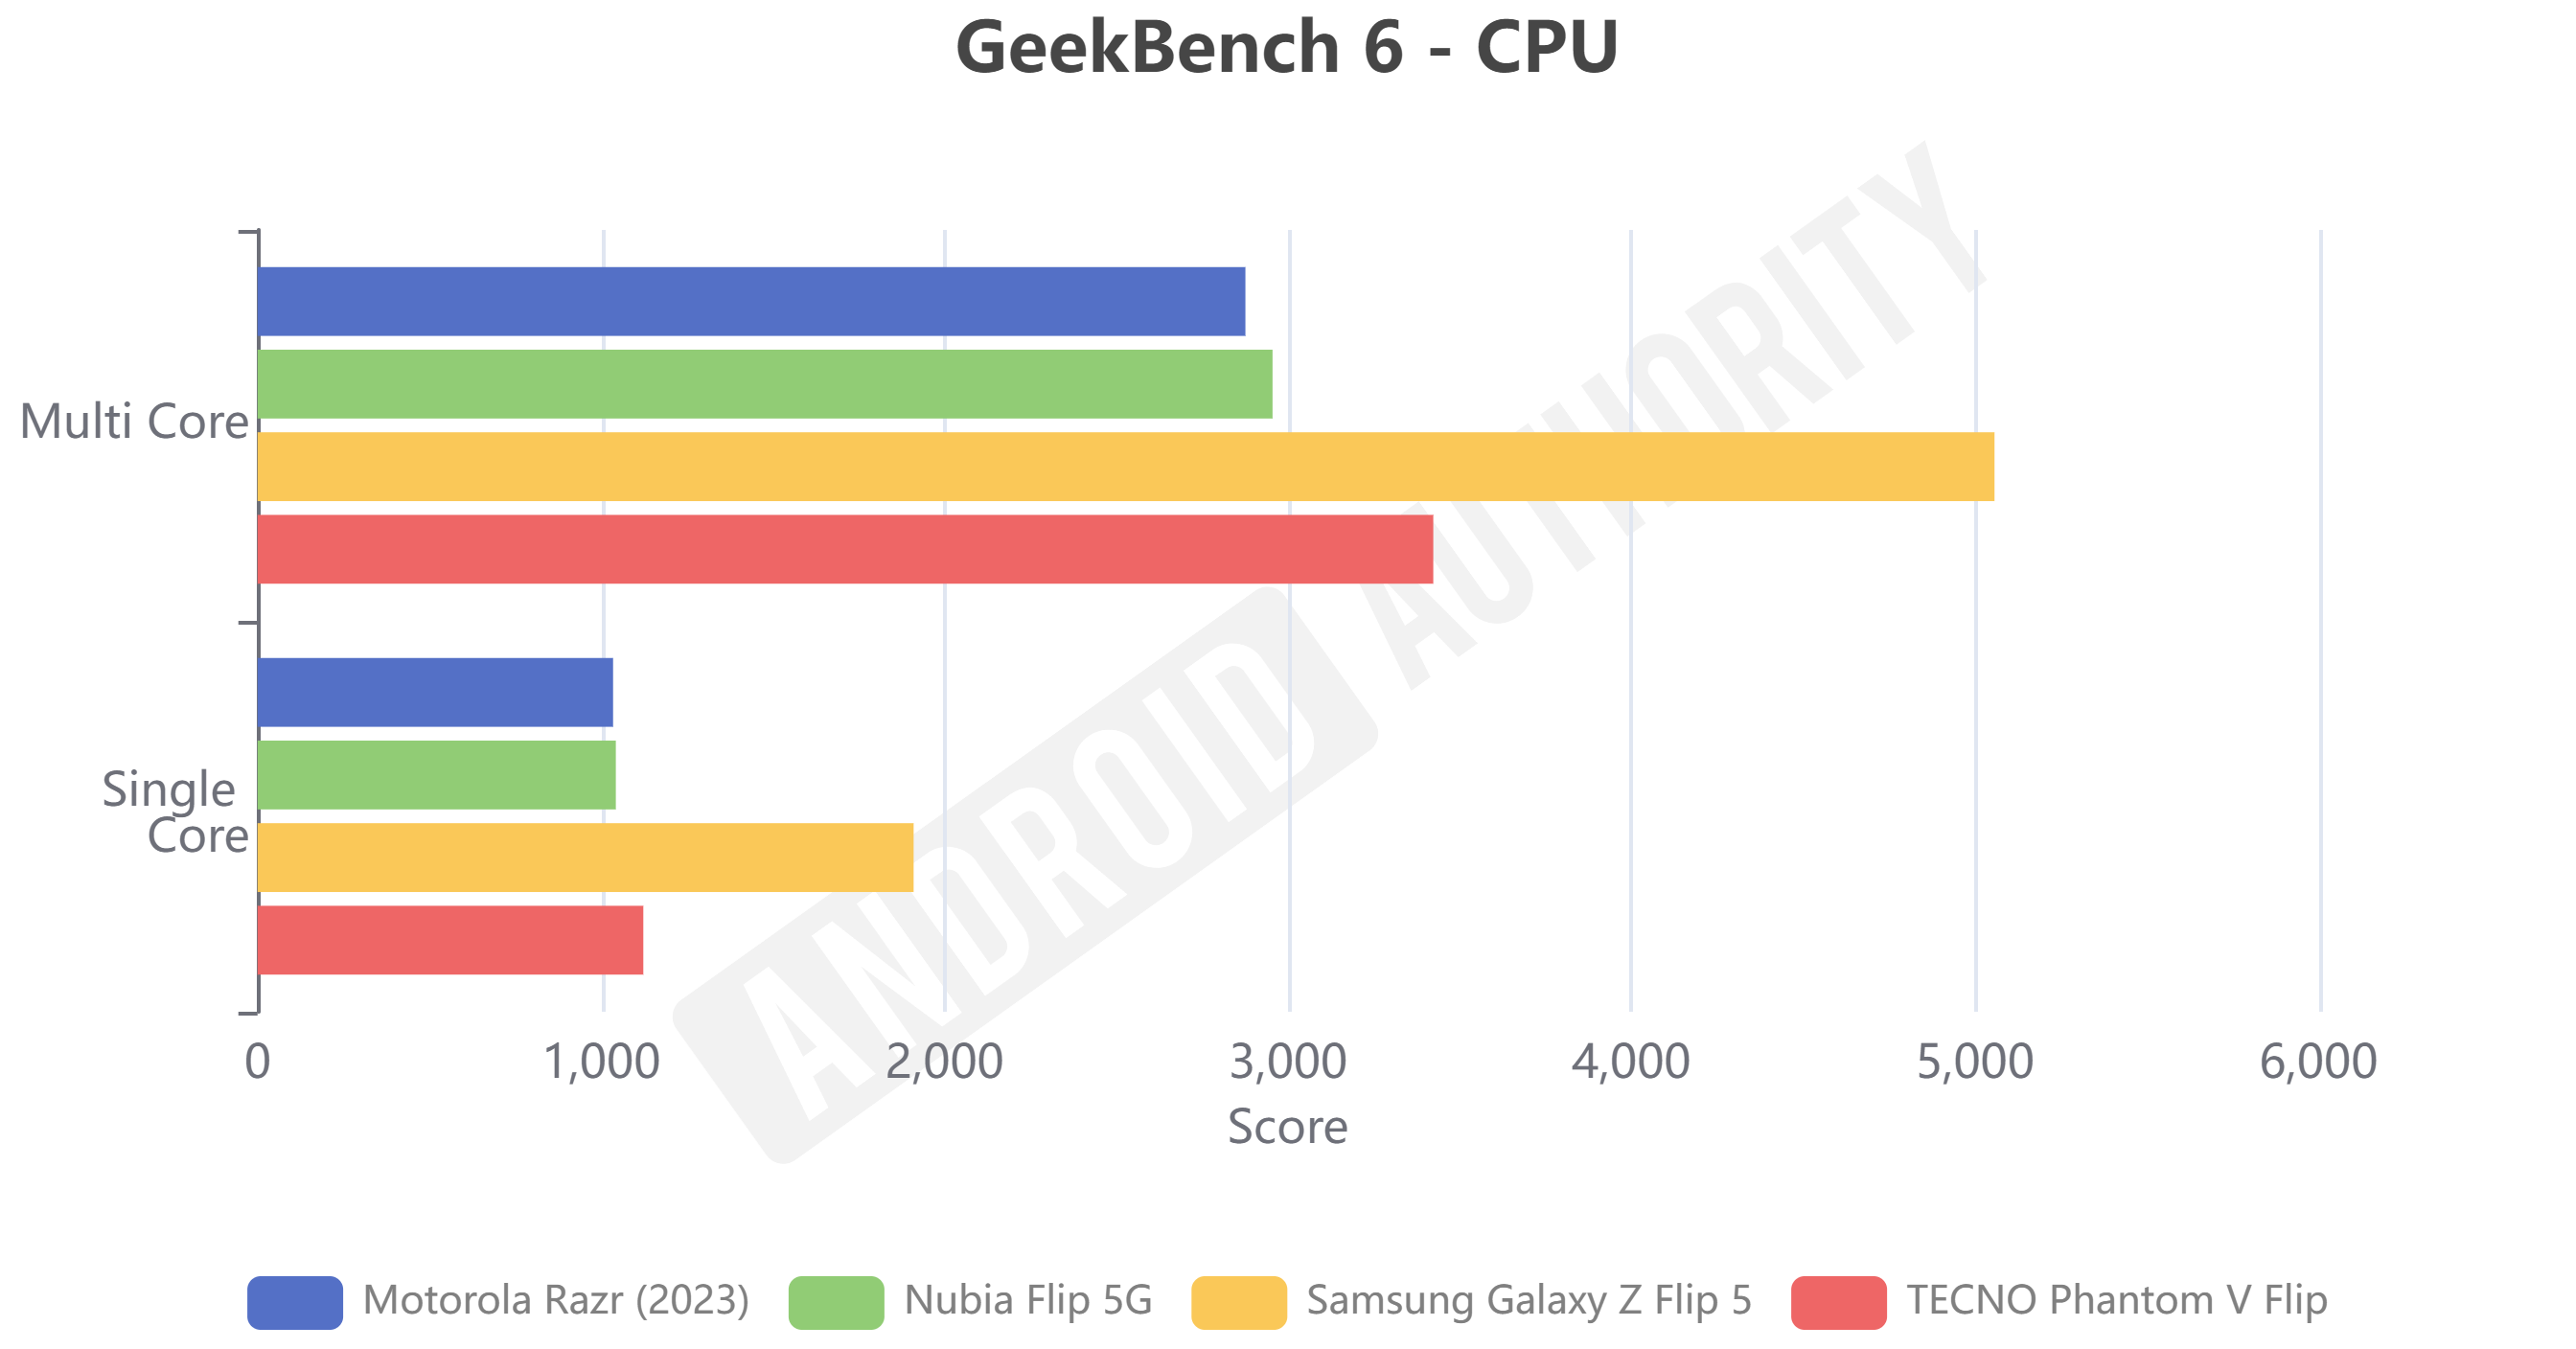 Nubia Flip 5G GeekBench 6 results.